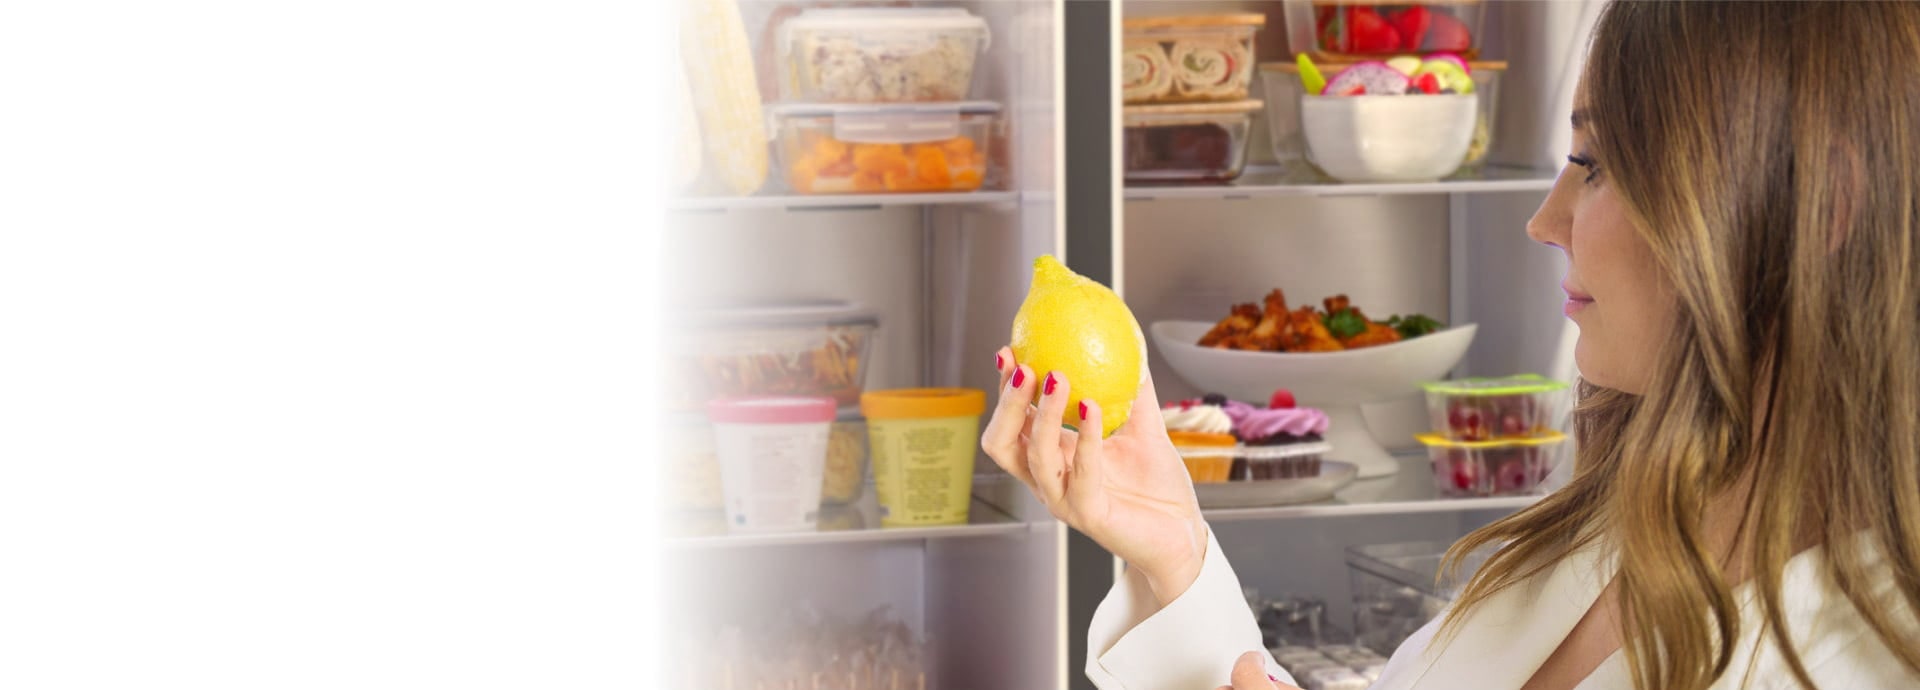 Eine Frau nimmt eine Zitrone vor der geöffneten Kühlschranktür des LG InstaVeiw Side-by-Side heraus.